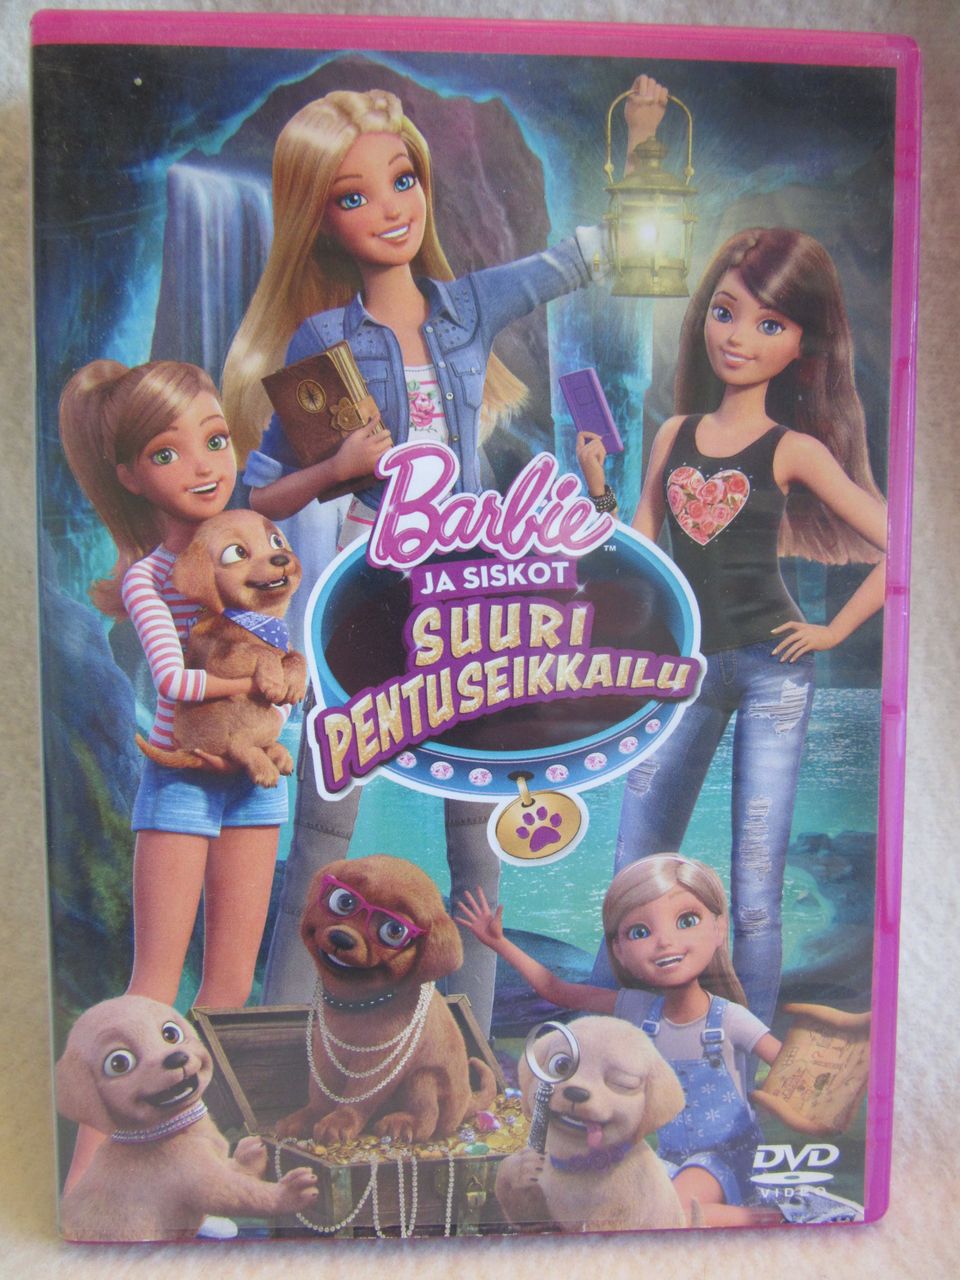 Barbie ja siskot : Suuri pentuseikkailu dvd